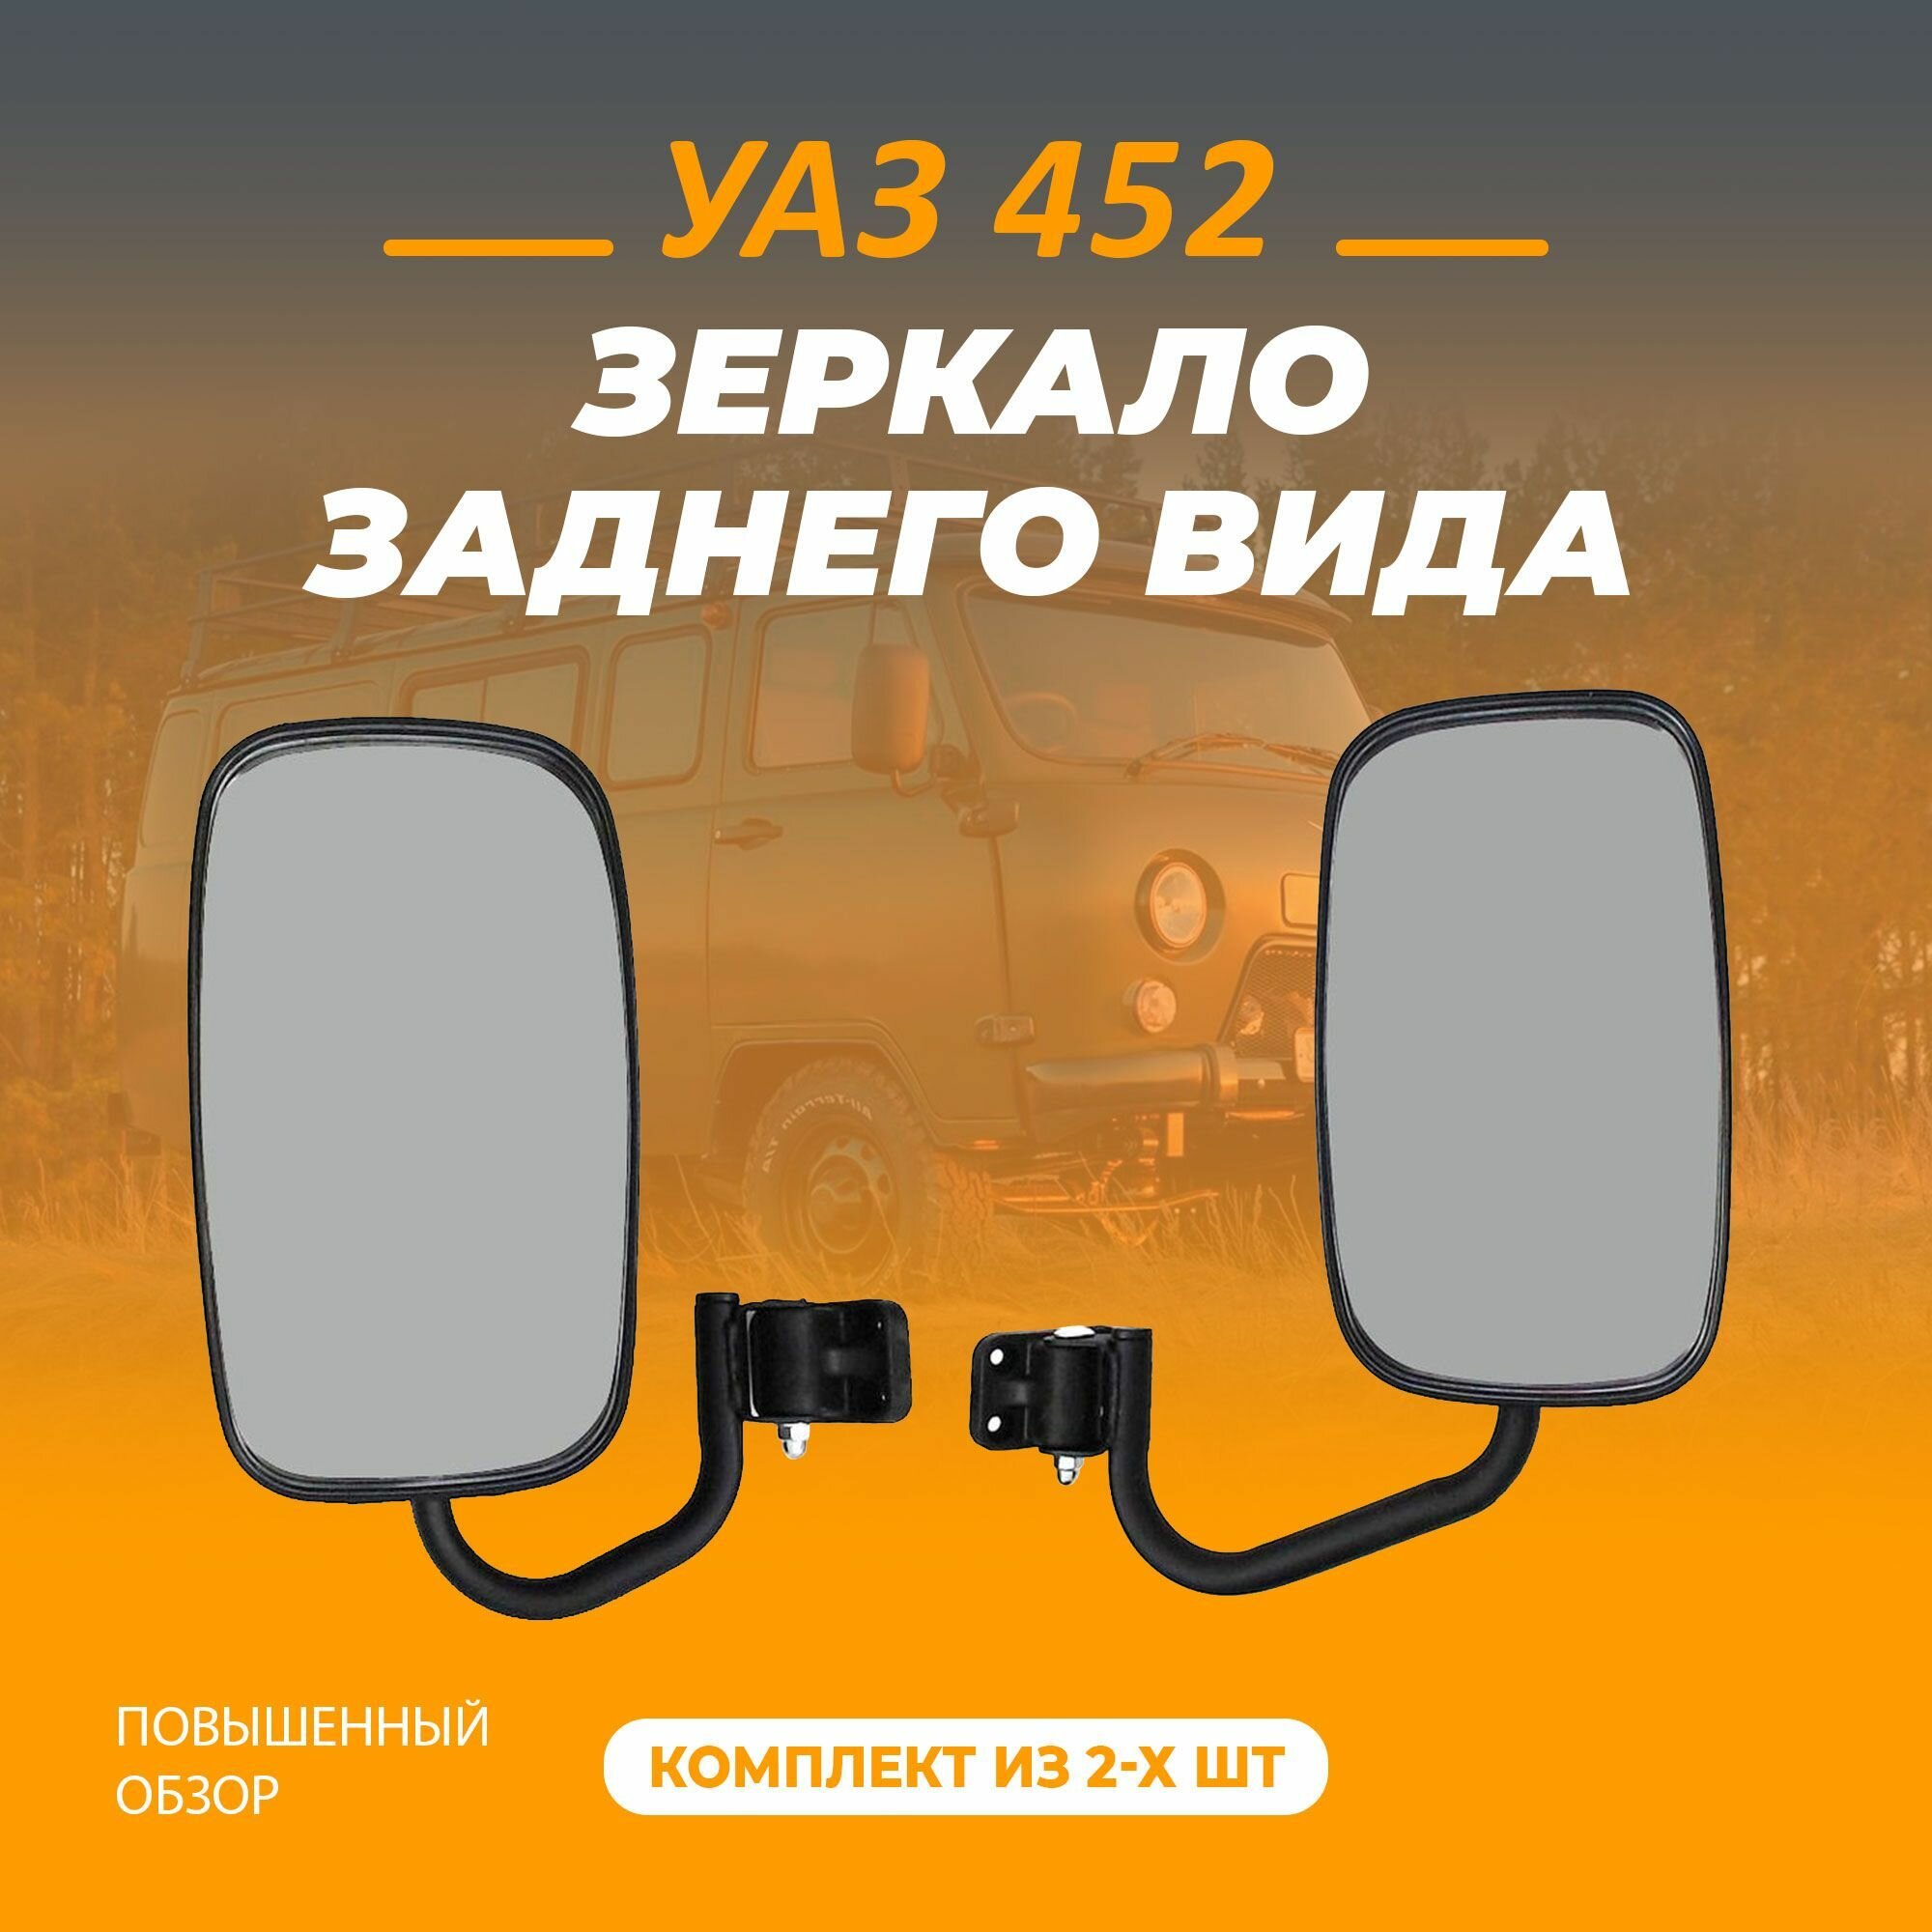 Зеркало заднего вида для автомобиля УАЗ 452 повышенной обзорности.